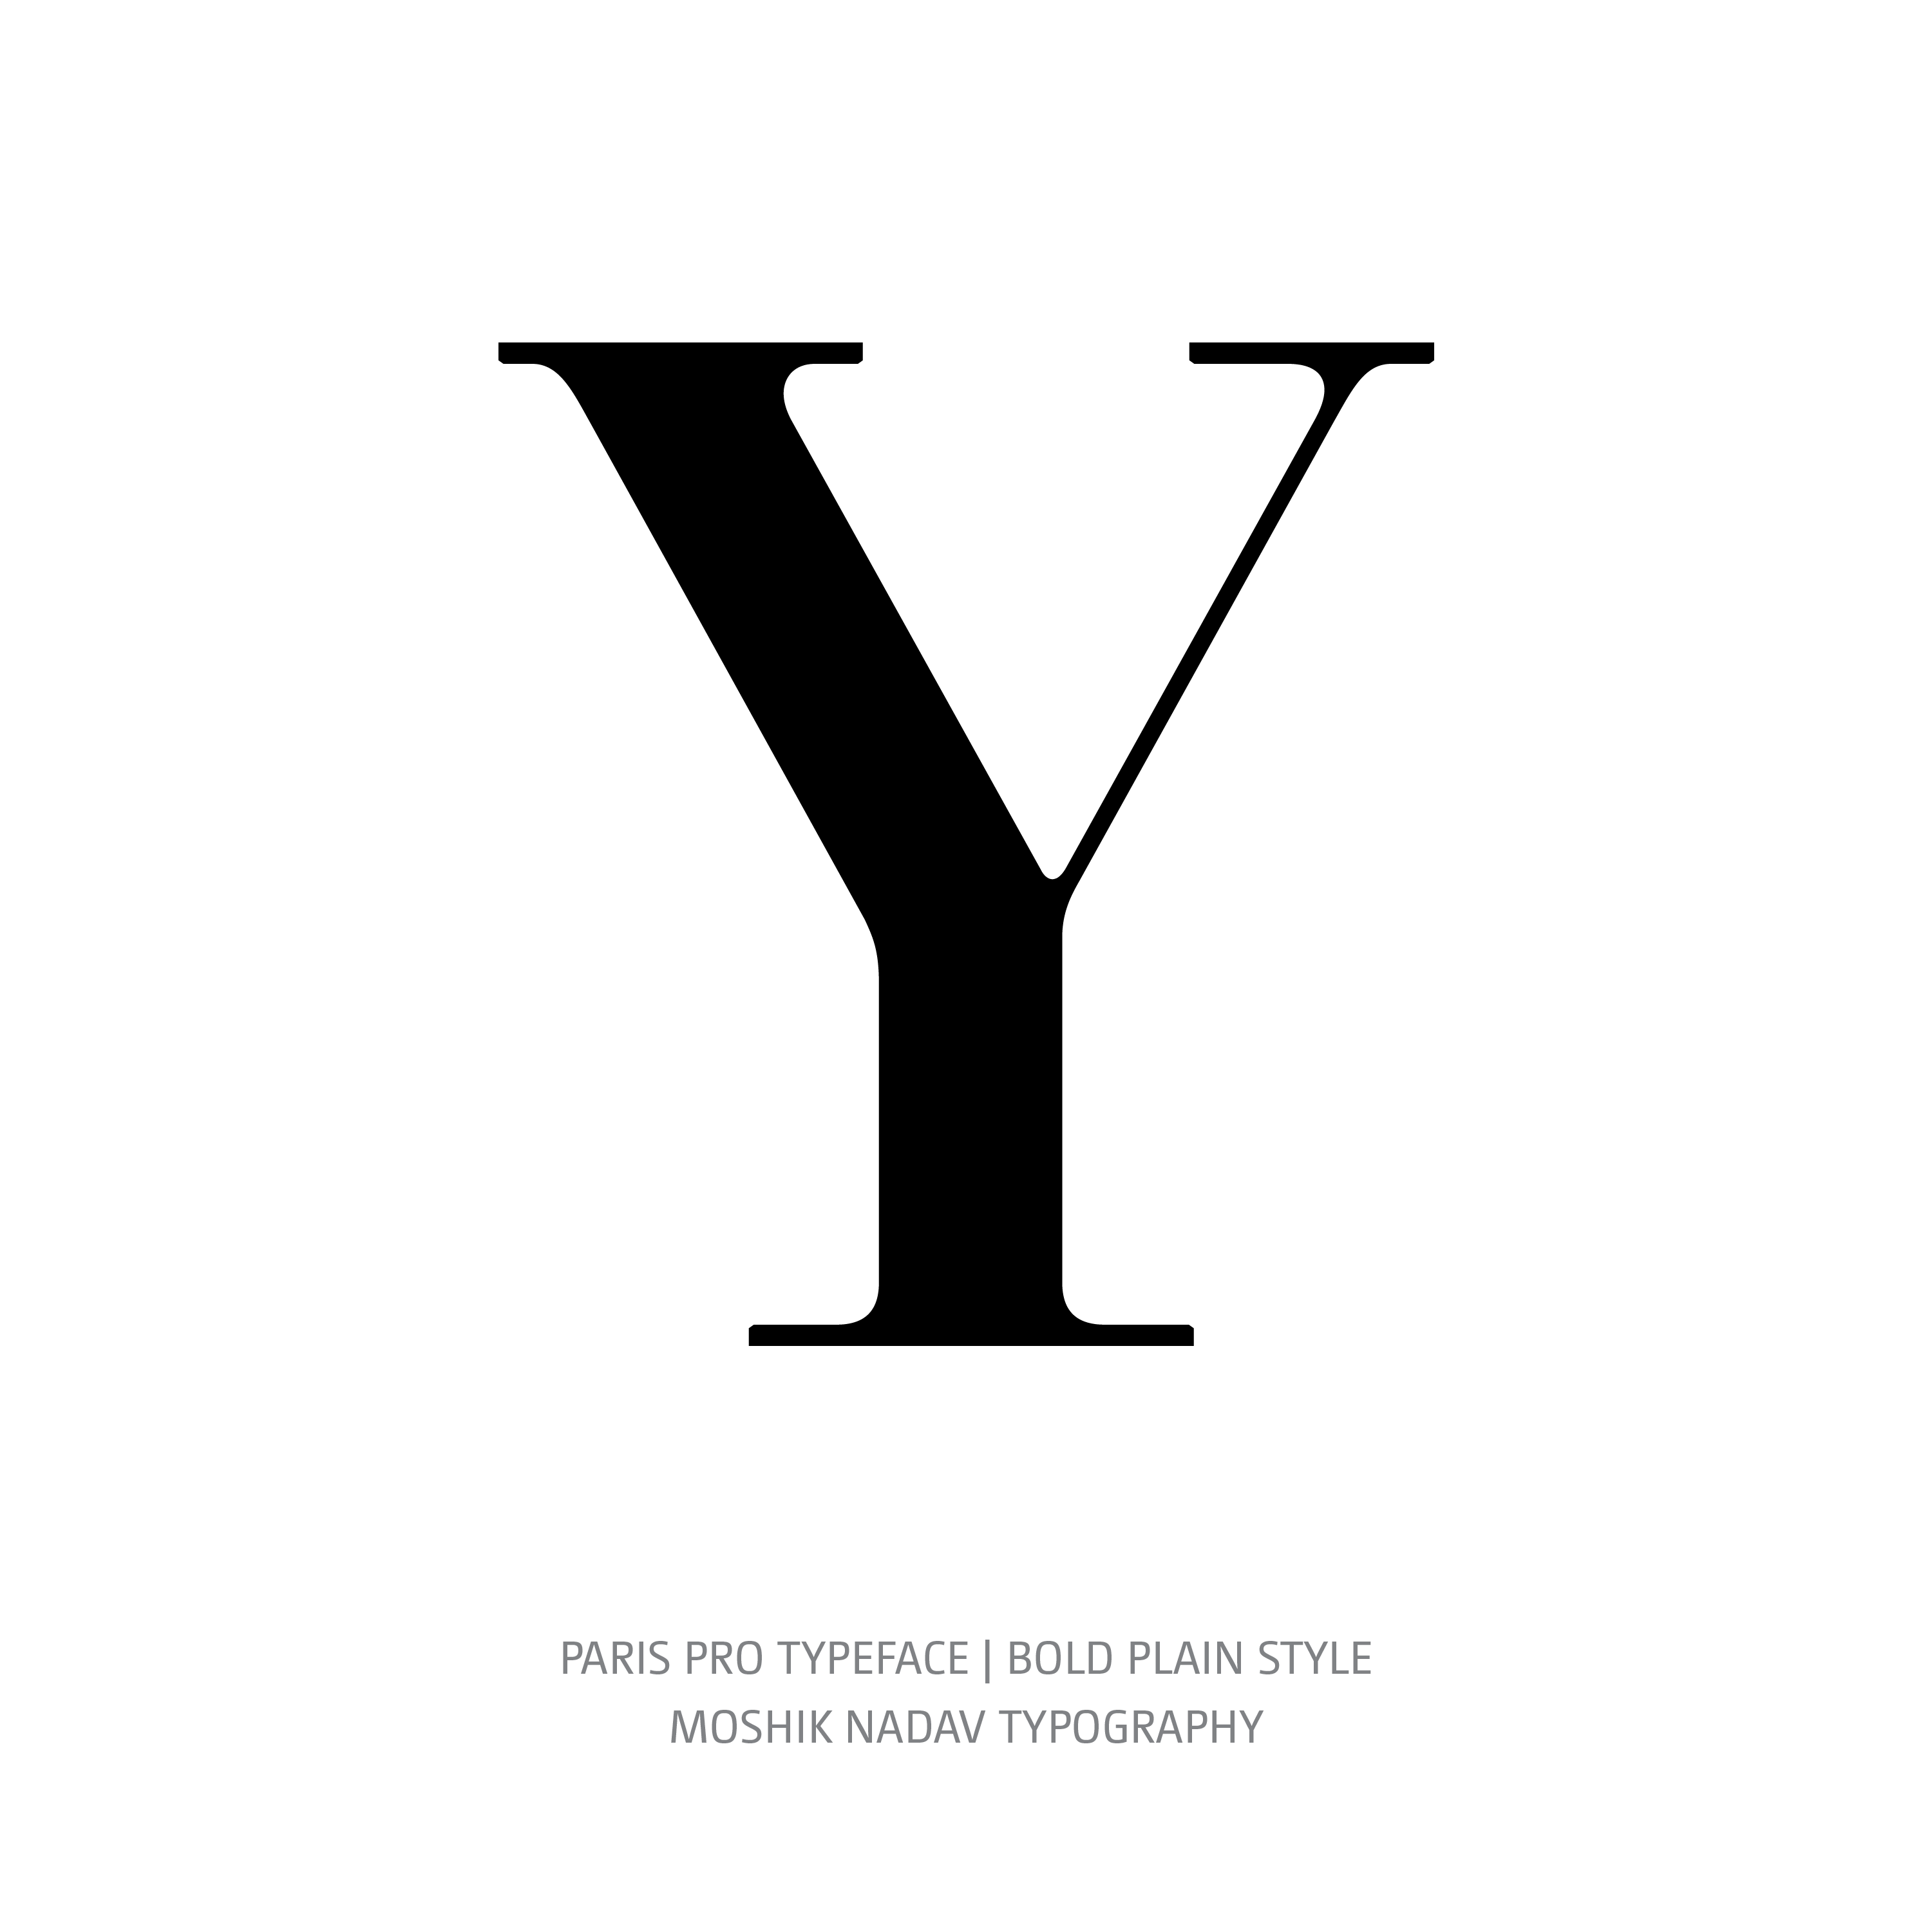 Paris Pro Typeface Bold Plain Y